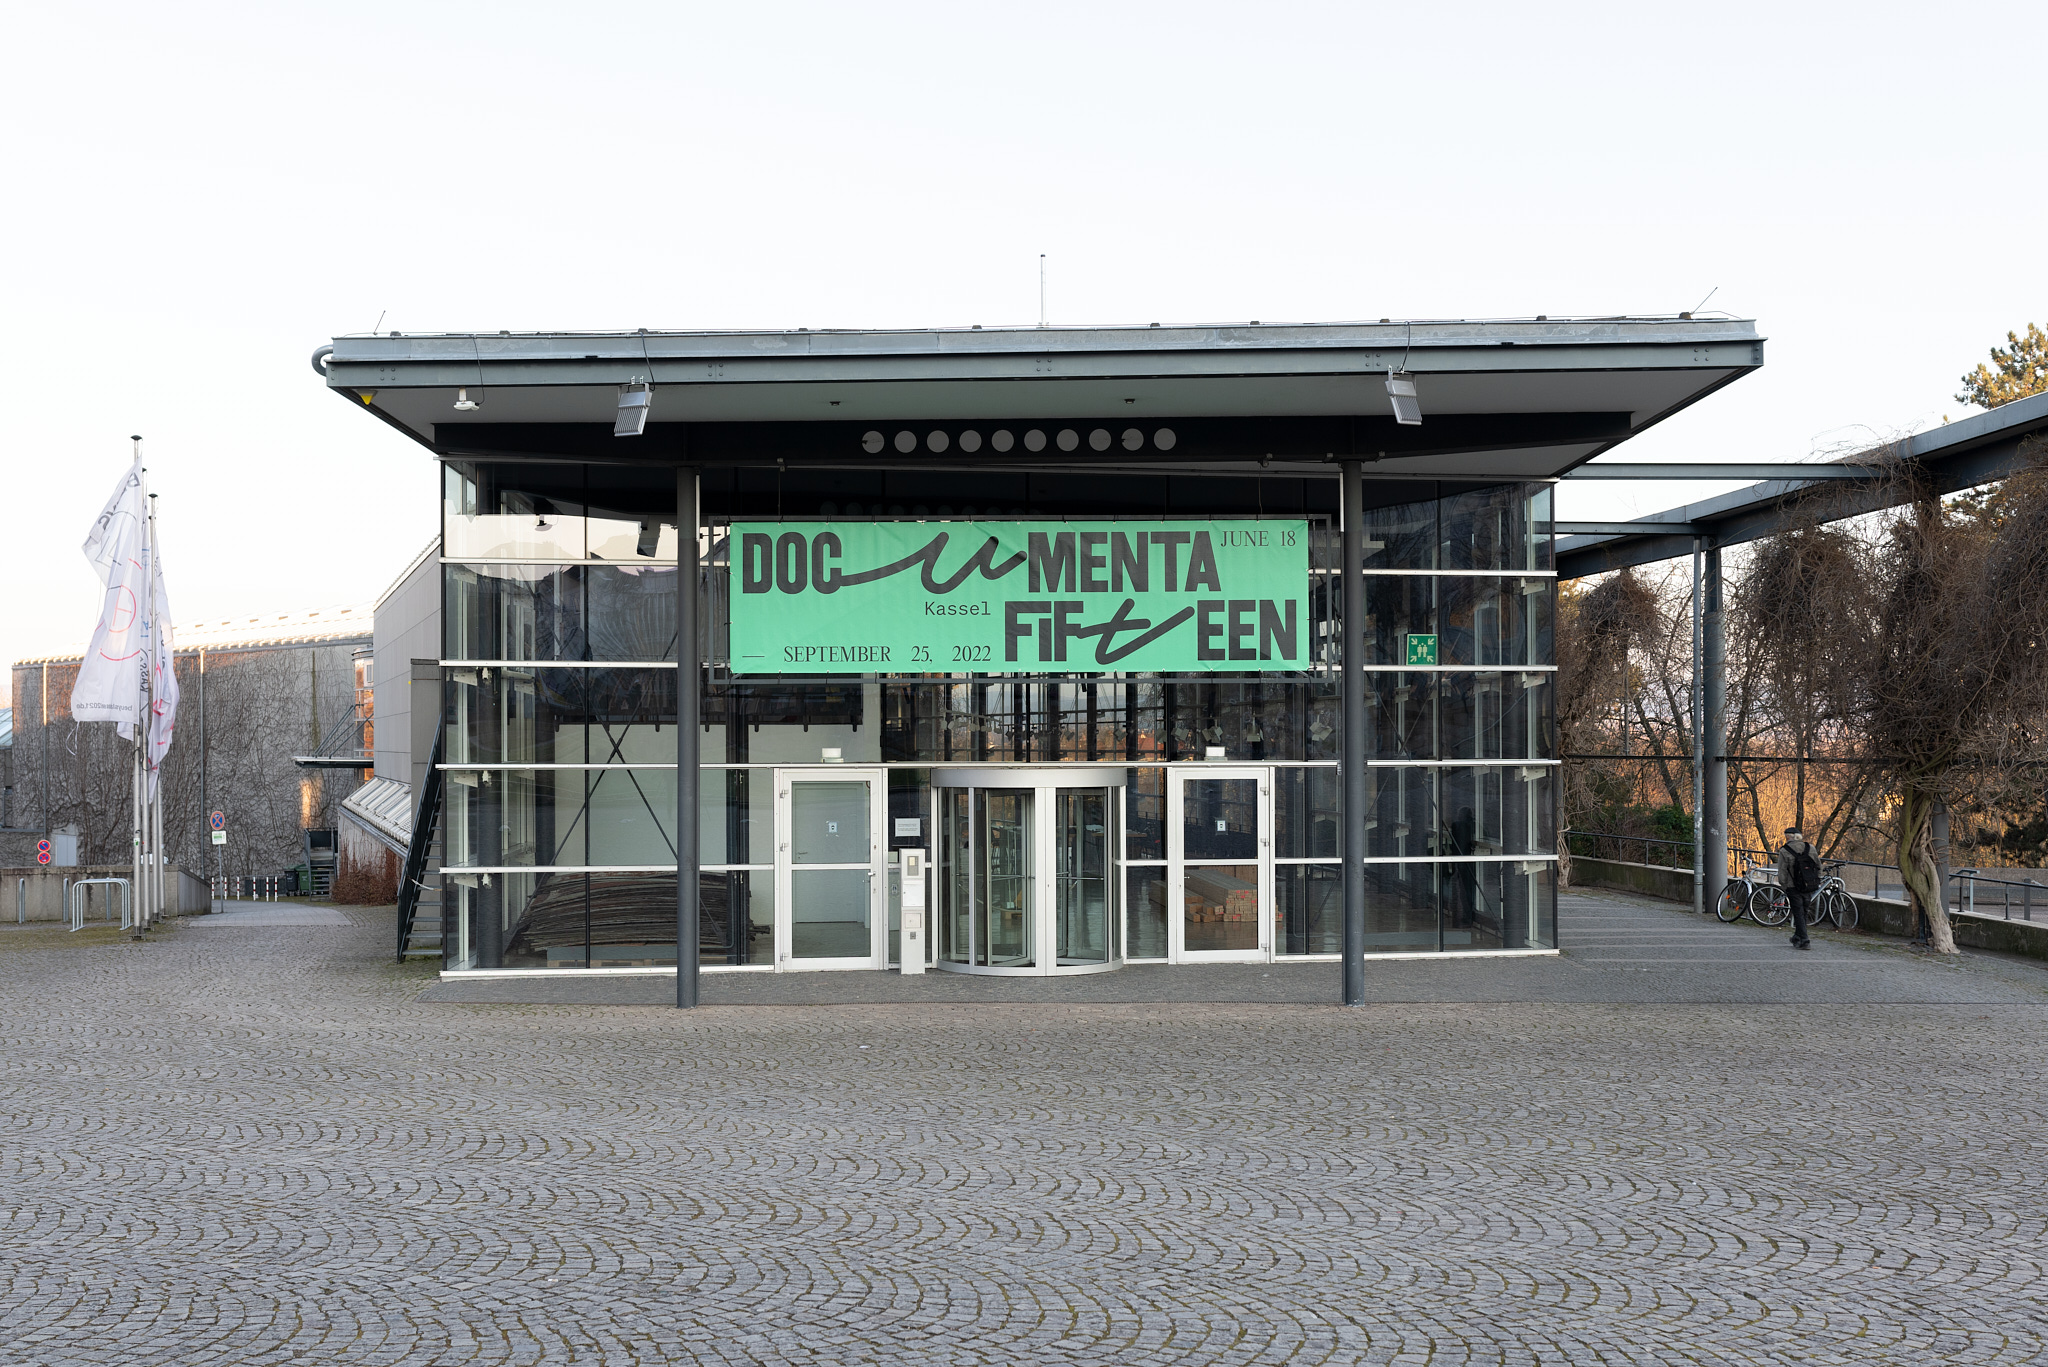 Das Foto zeigt die documenta Halle mit ihrer großen Glasfront, den Stahlträgern und einem Flachdach. Vor der Eingangsdrehtür hängt ein großes grünes Banner mit dem Schriftzug "documenta fifteen".